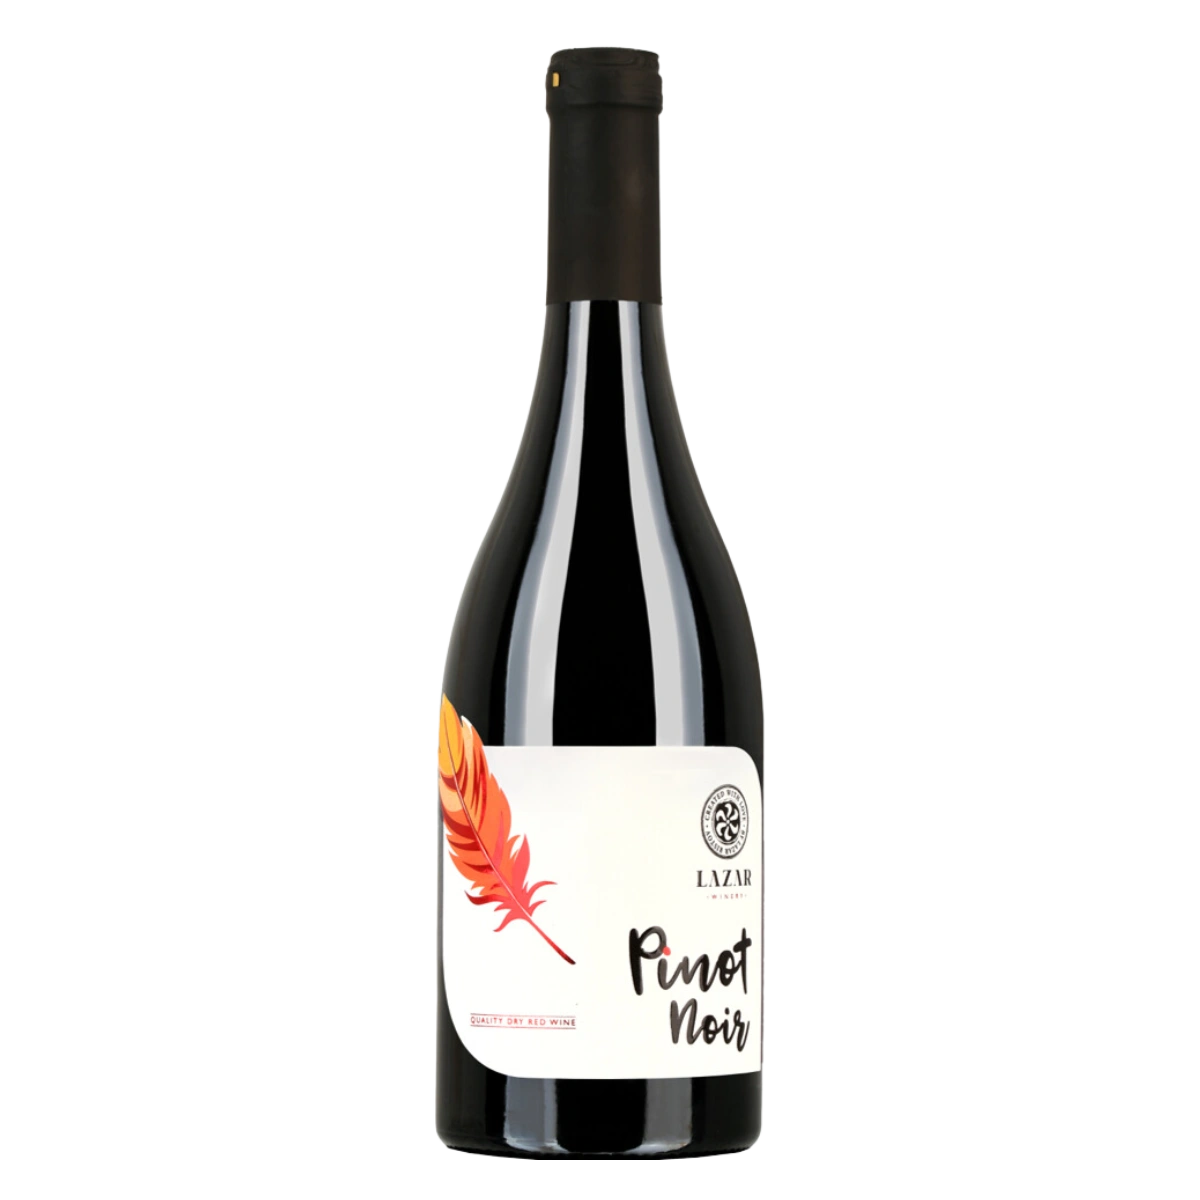 Pinot Noir 2021 - Rotwein trocken aus Mazedonien - Lazar Winery